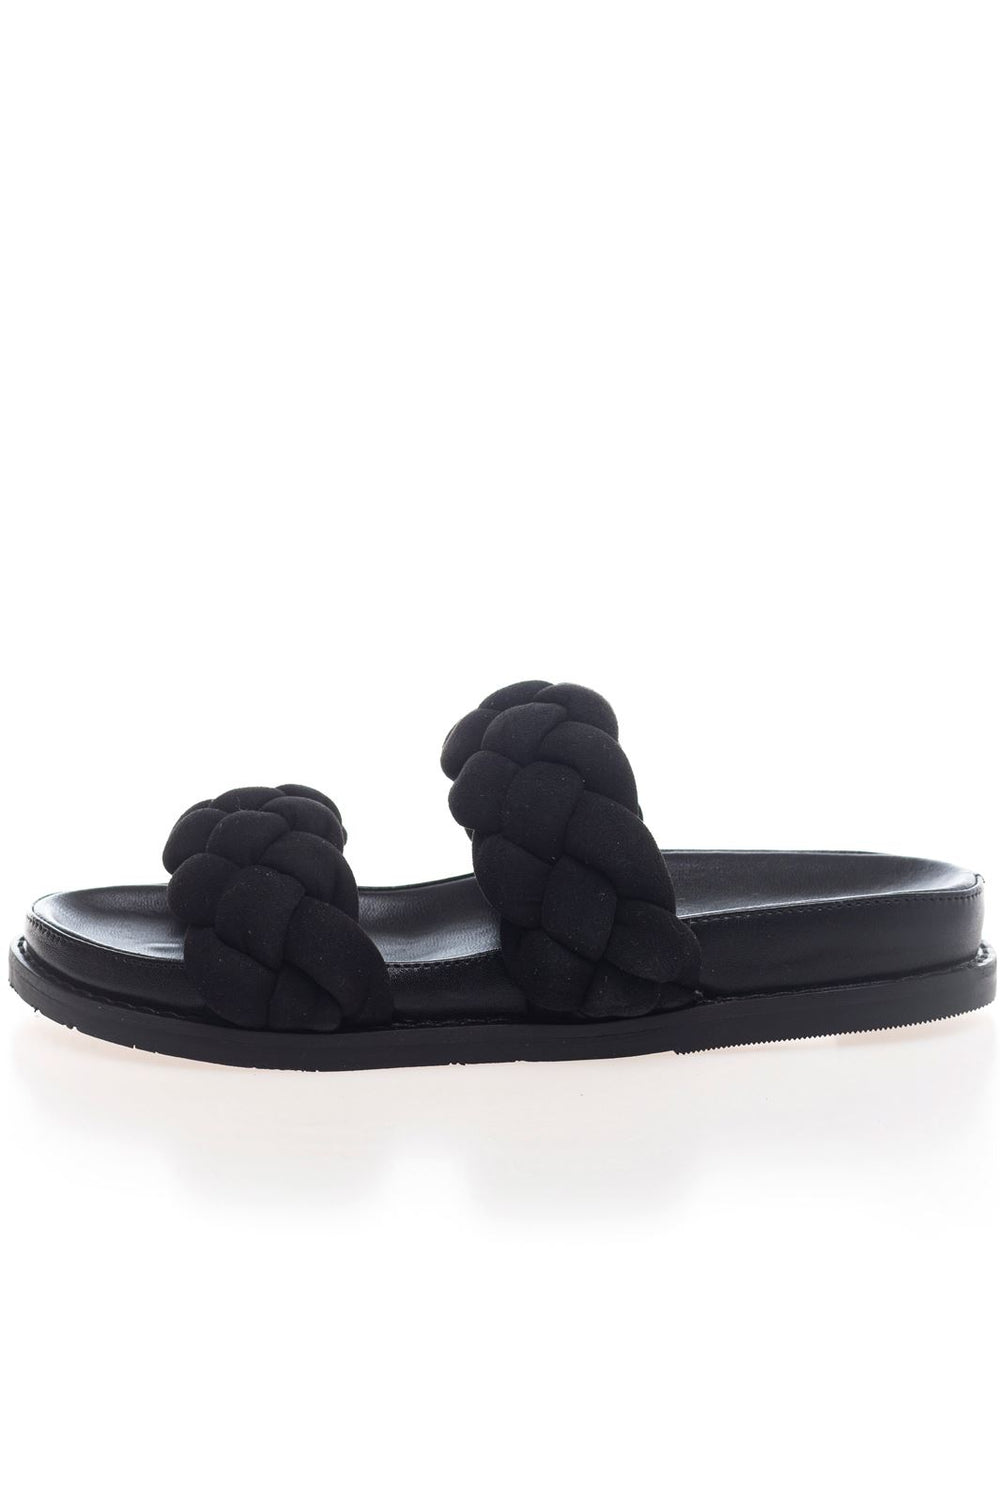 Forudbestilling - Copenhagen Shoes - Fashionista Suede 22 - 0001 Black (Marts/April) Sandaler 